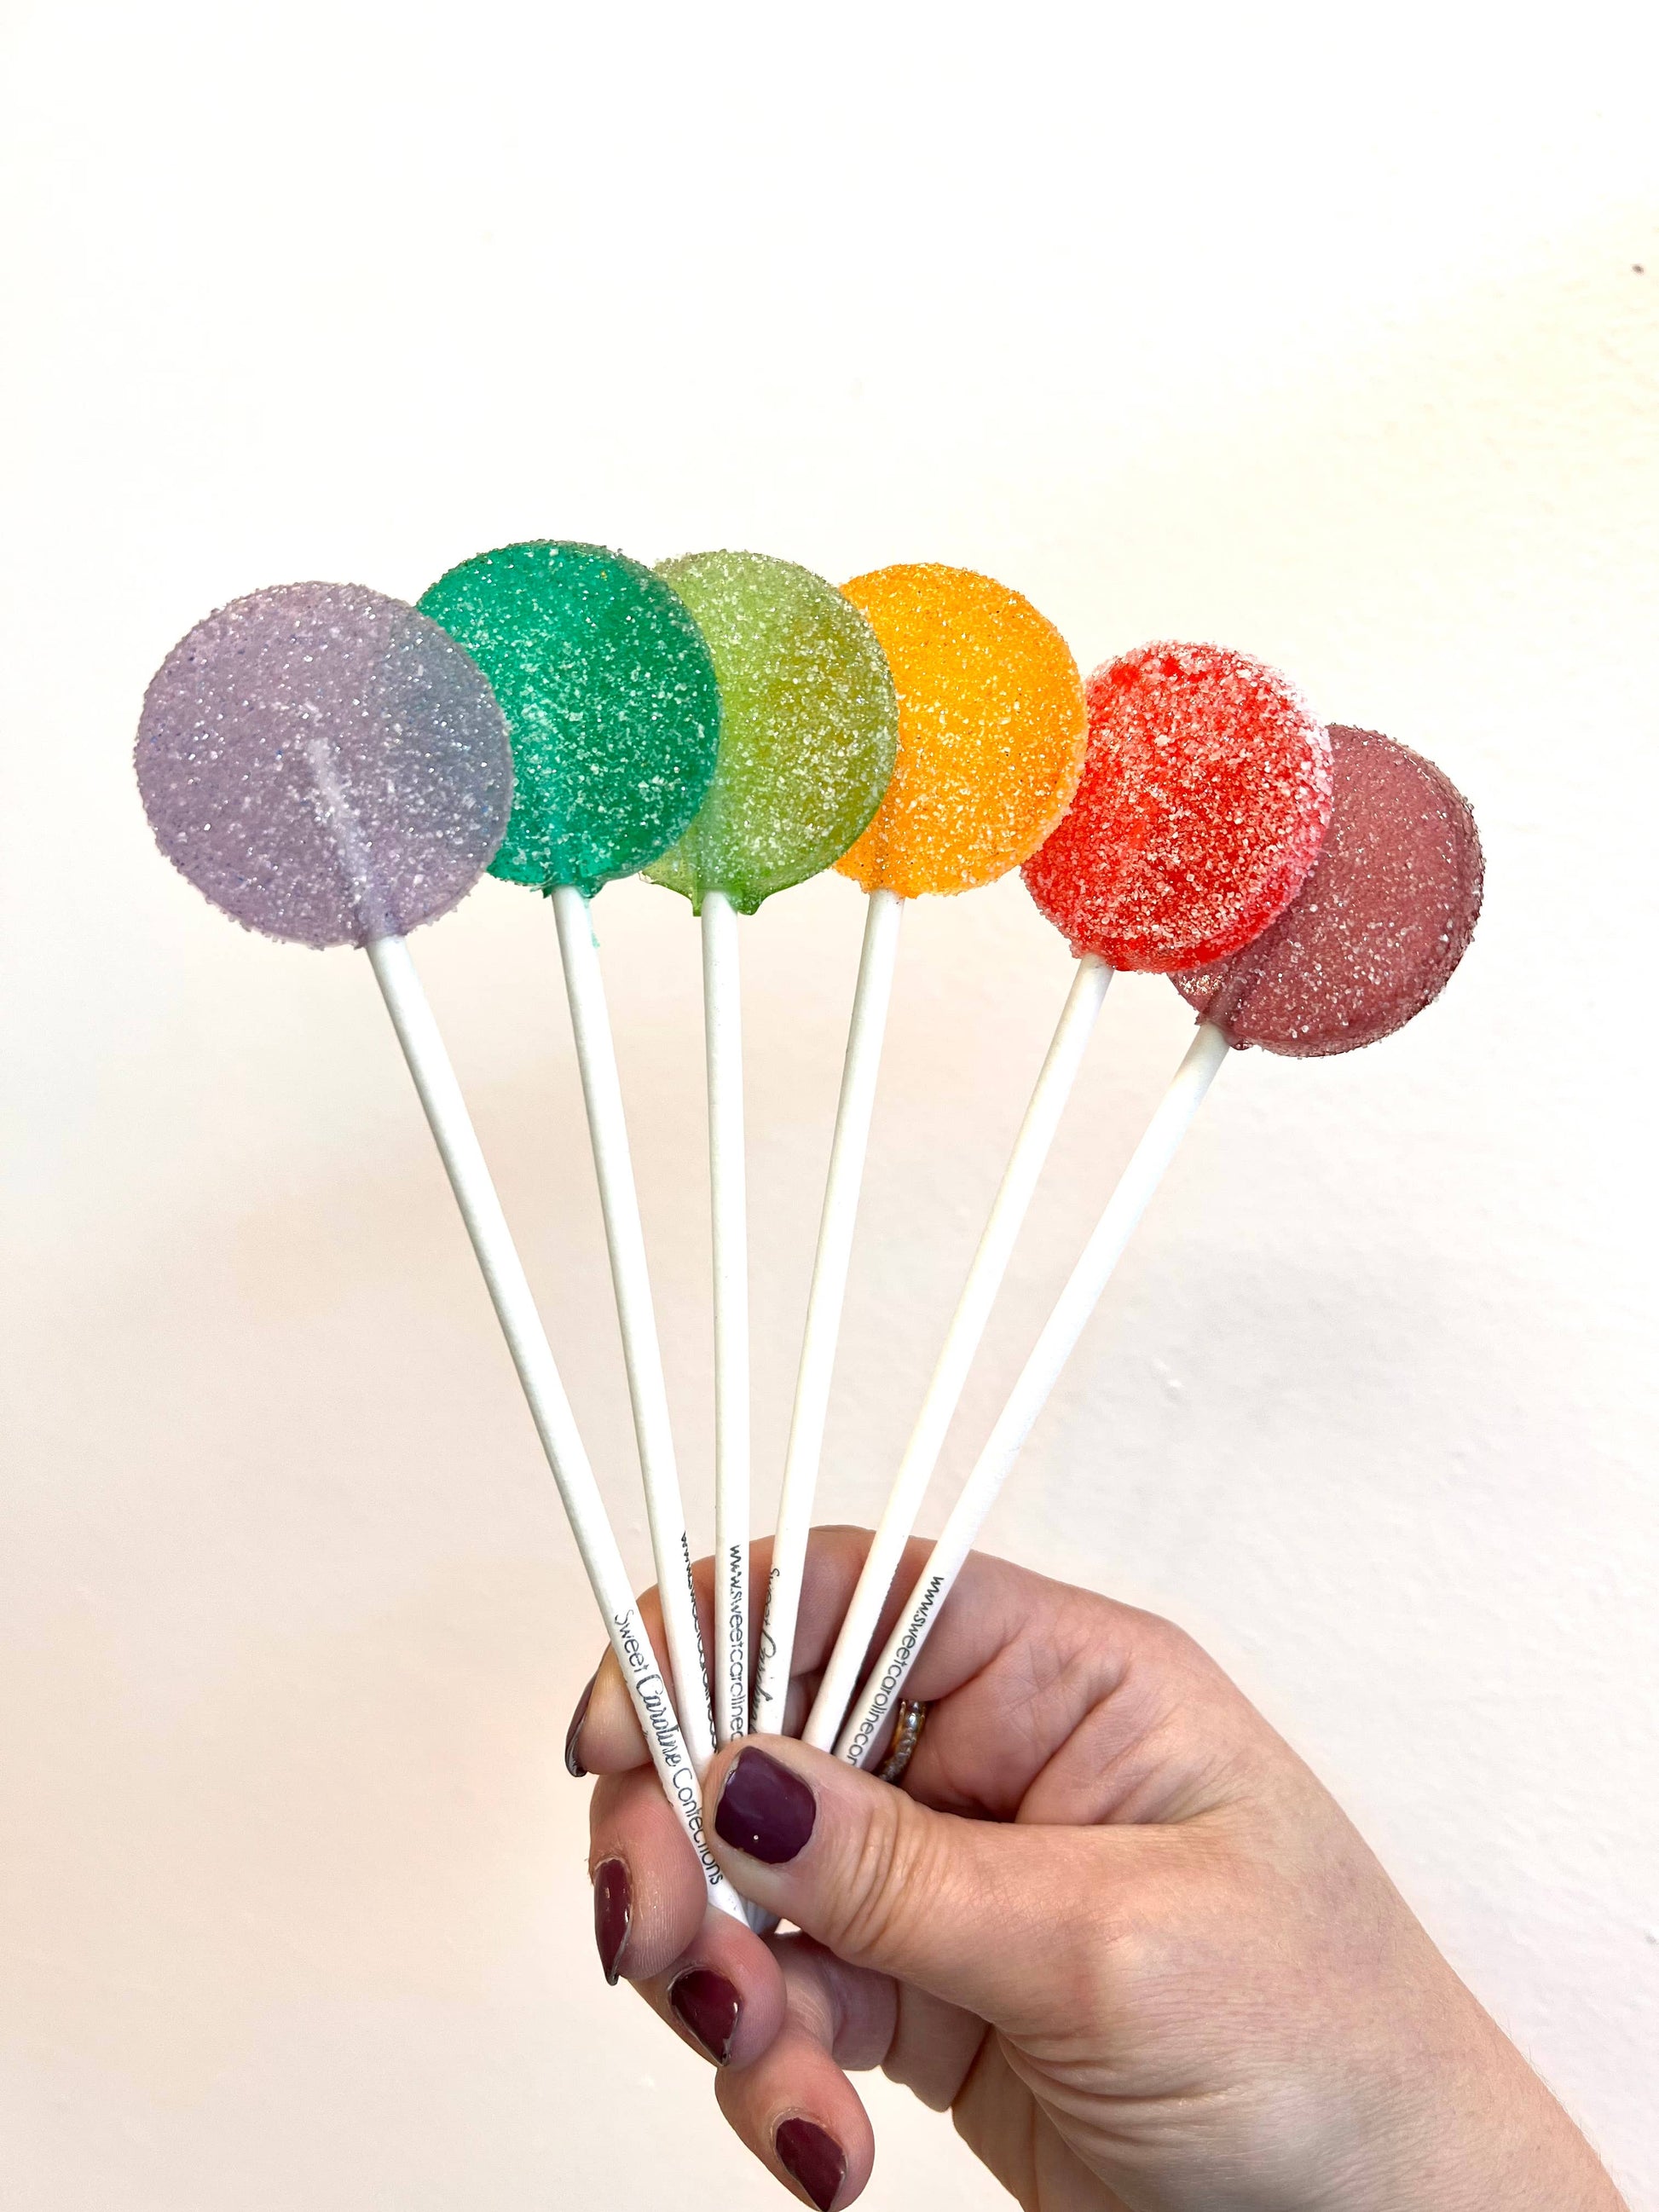 Sour Fruit Sparkle Lollipops, 10/Case, Mixed Flavors - Storm and Sky Shoppe